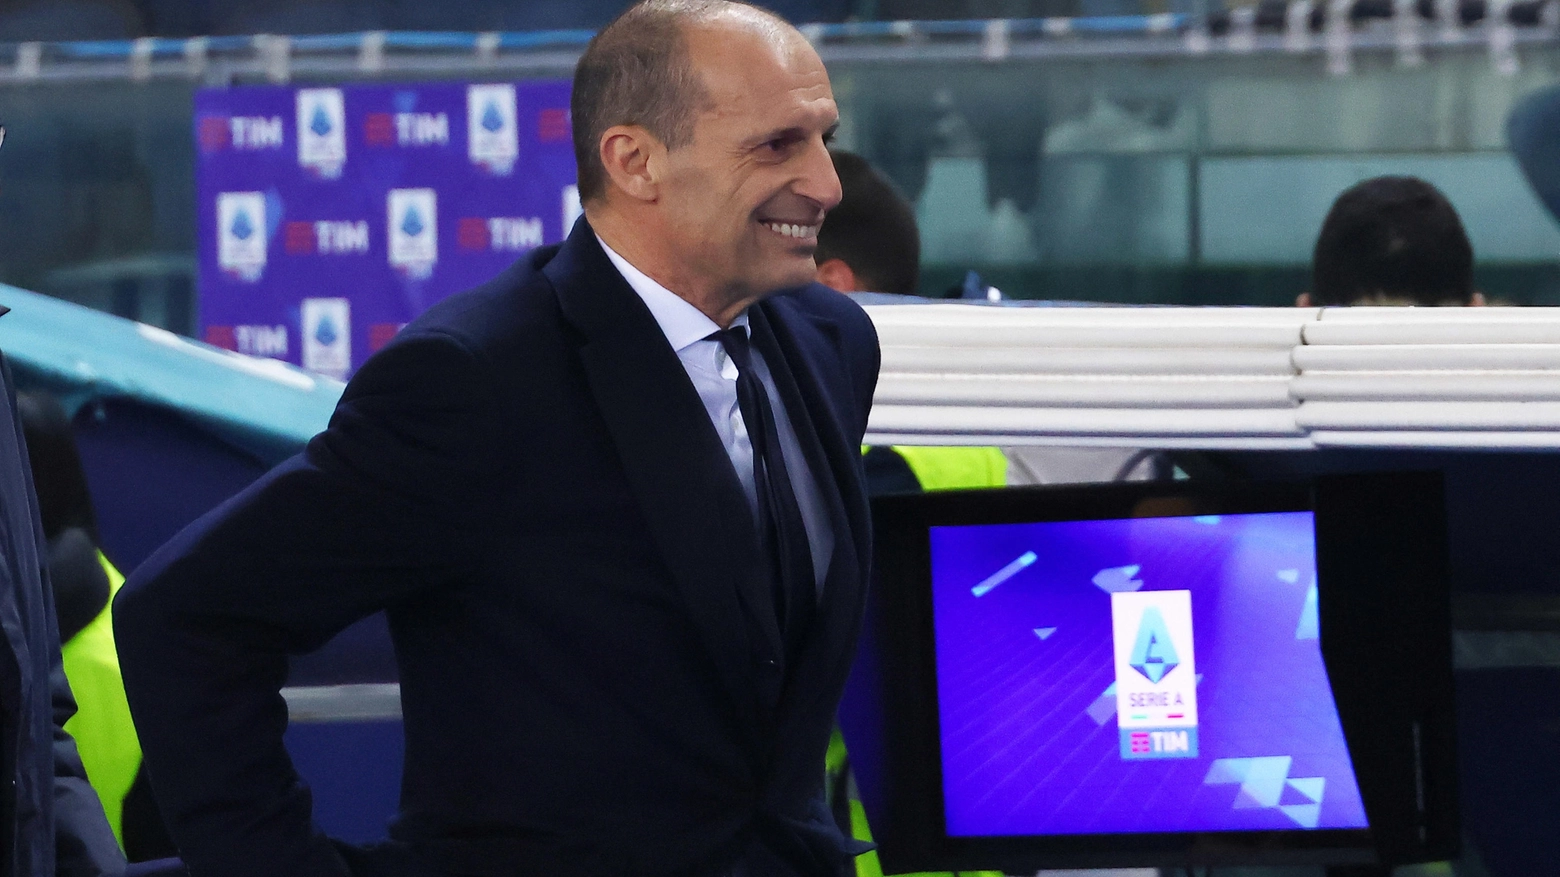 L’eliminazione dalla Champions di Lazio e Napoli qualifica matematicamente i bianconeri al torneo del 2025. Giuntoli pronto a investire